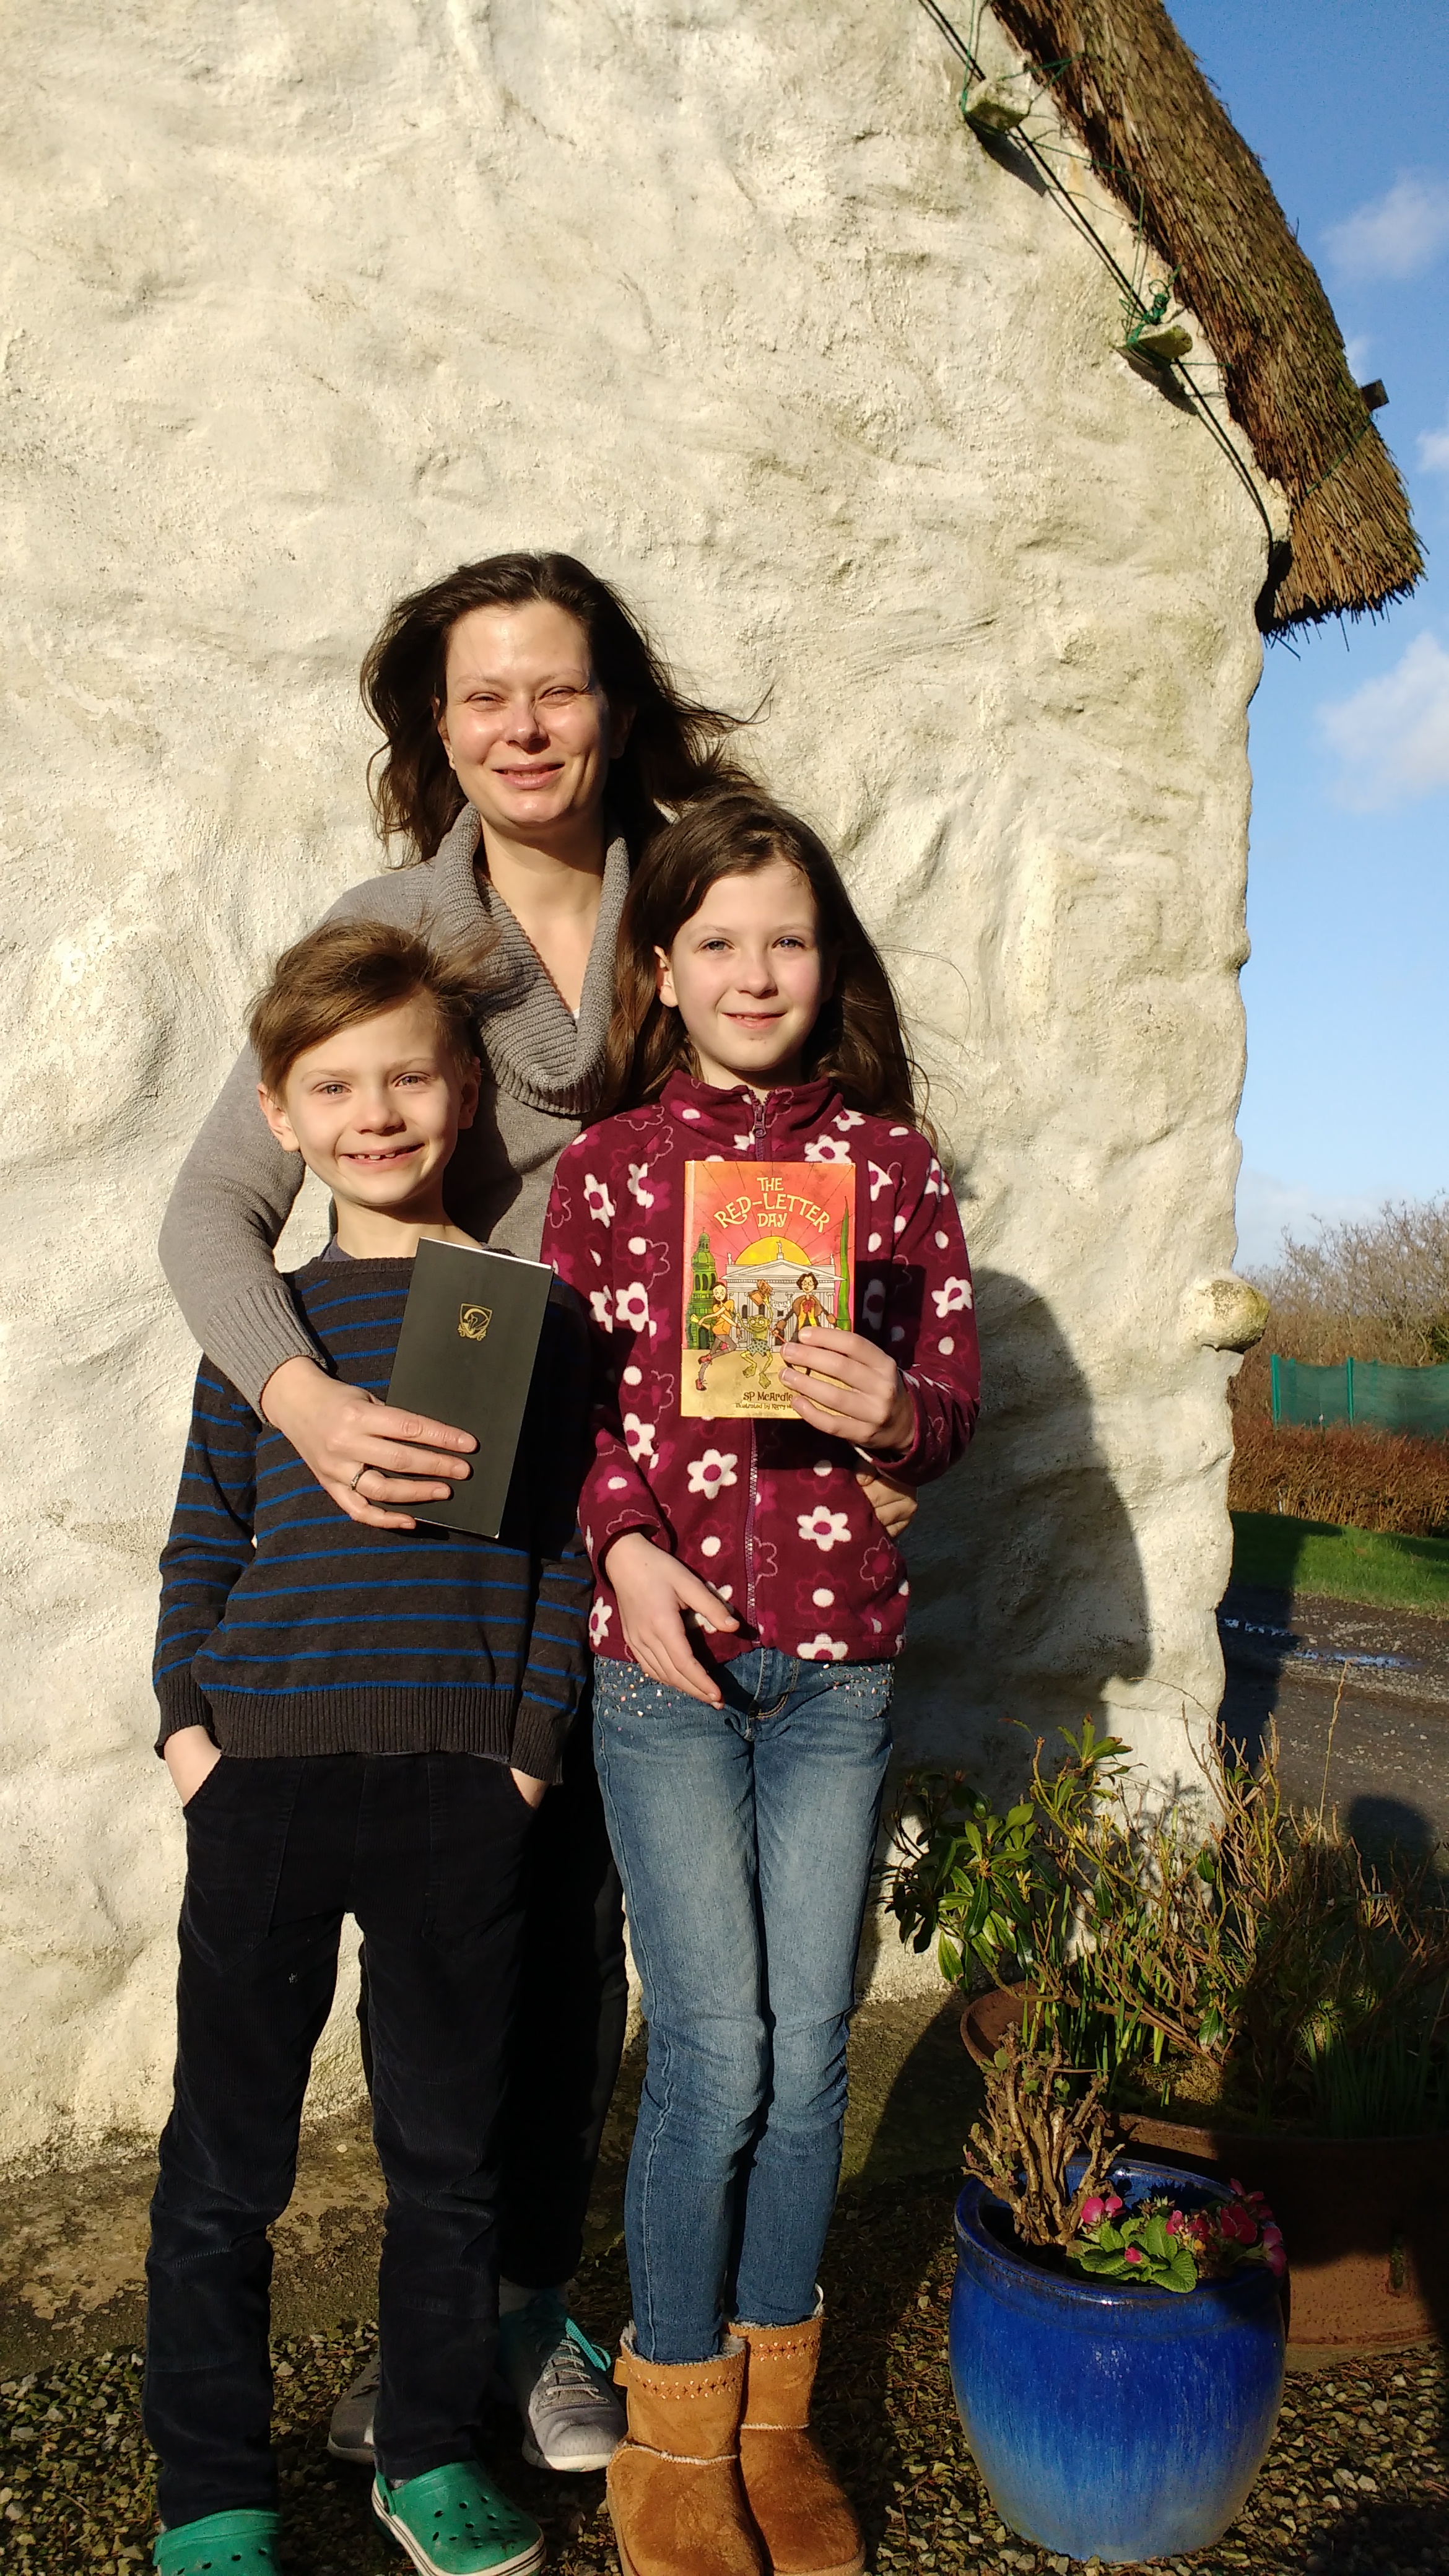 Ibbs family winner of Dunboyne draw - The Red-Letter Day